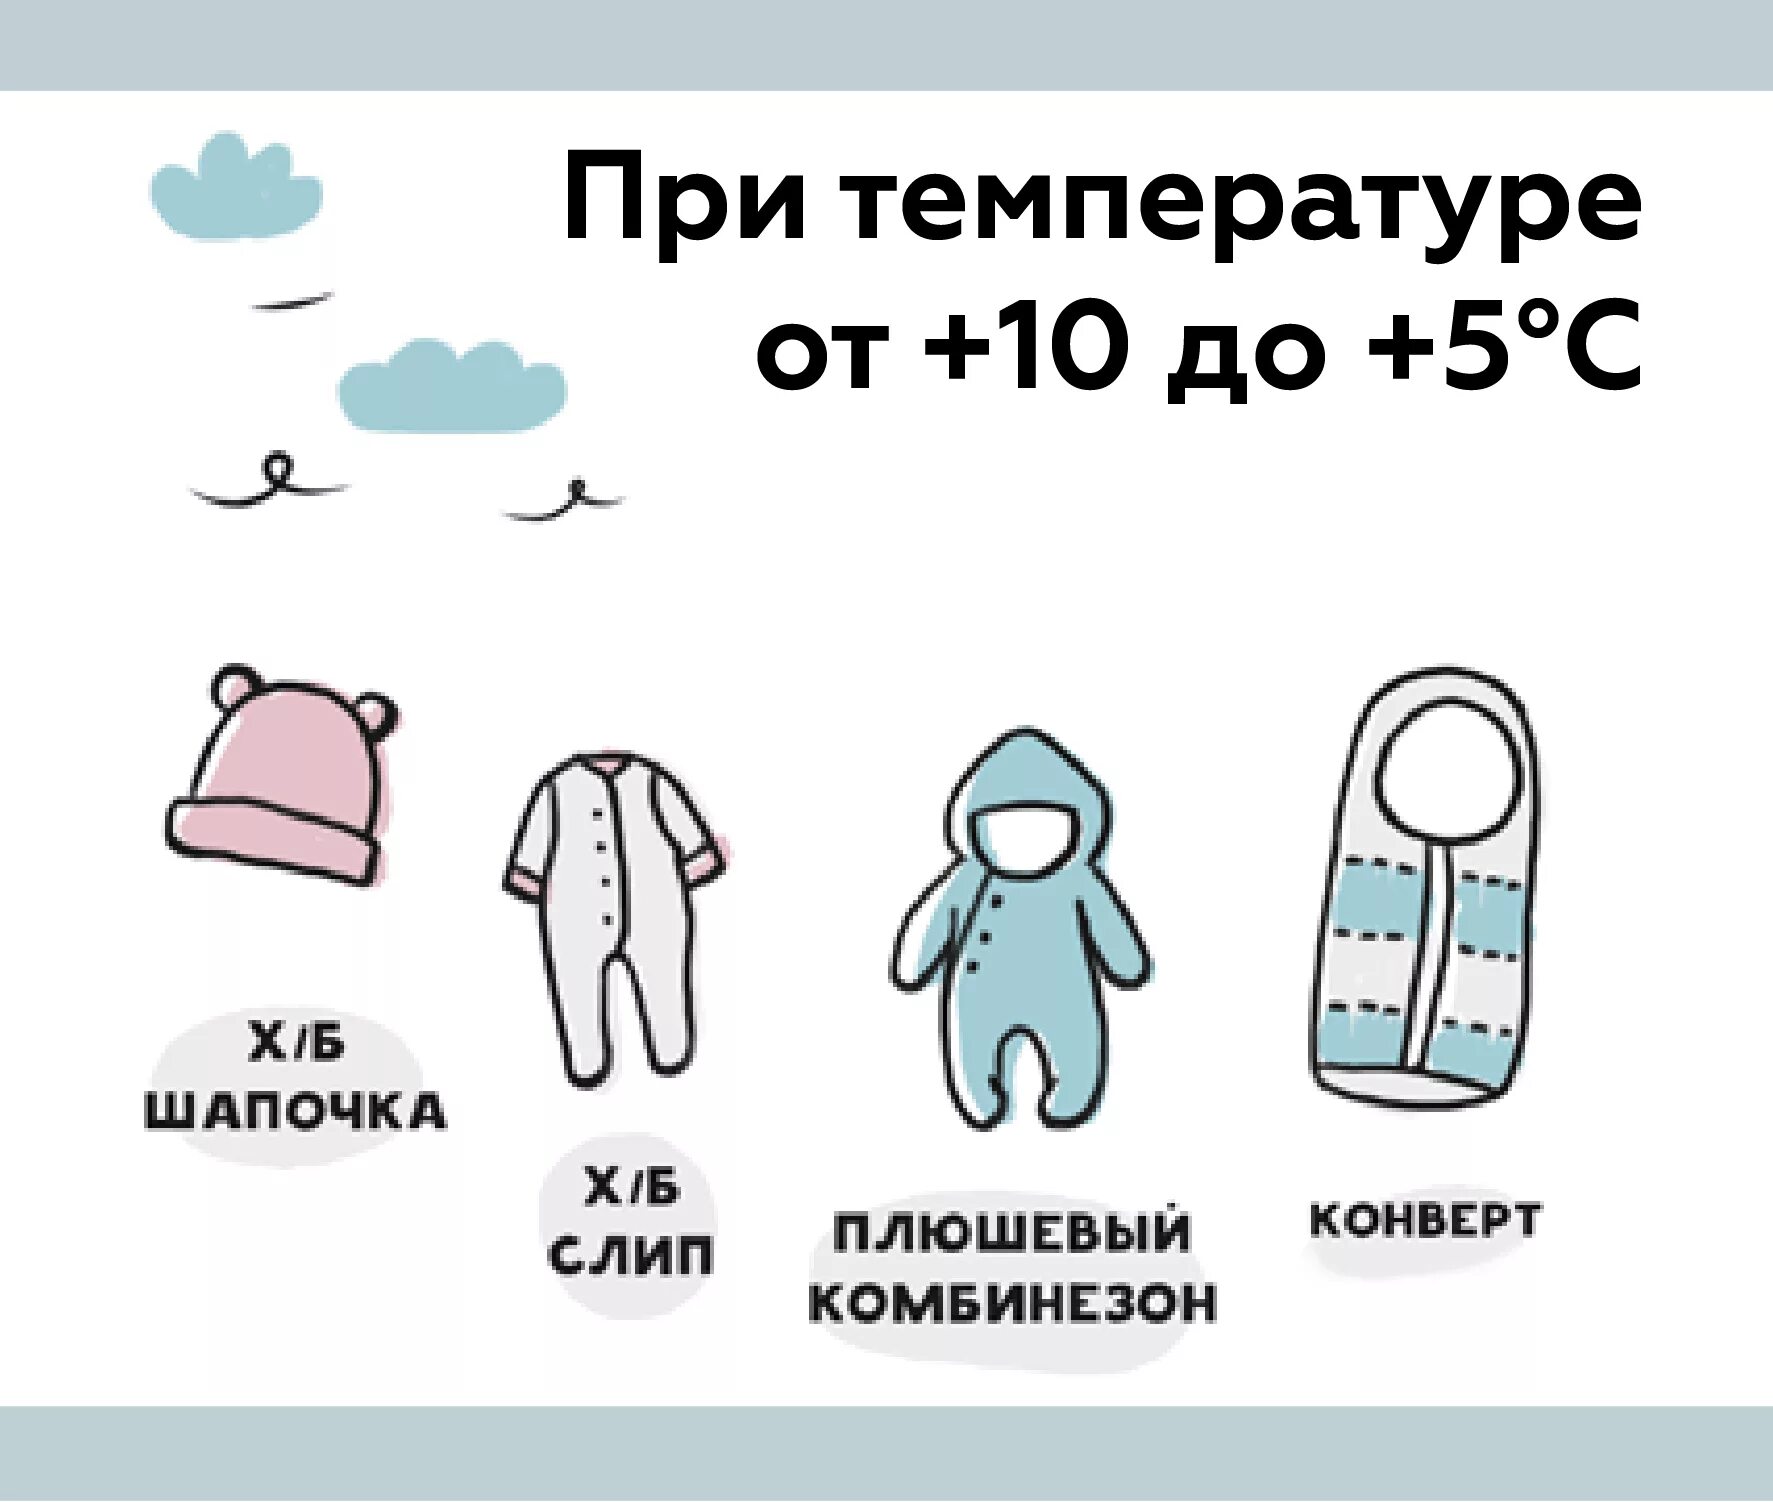 Как одеть ребенка по погоде таблица. Как одеть грудничка на прогулку в +10. Как одевать грудничка на улицу в +10. Как одевать малыша в 10 градусов тепла. Как одевать грудничка в +25 на прогулку.